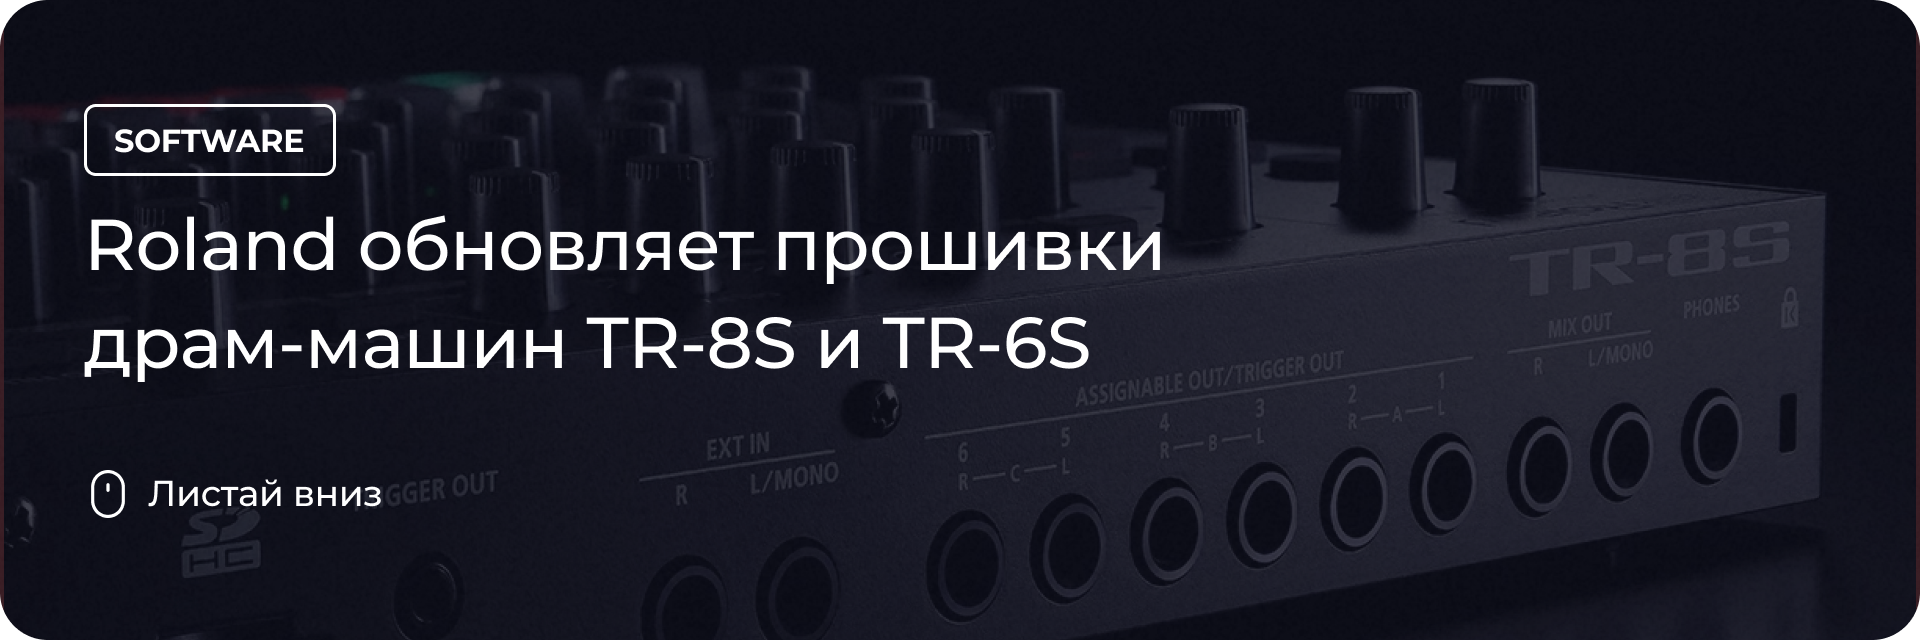 Roland обновляет прошивки драм-машин TR-8S и TR-6S